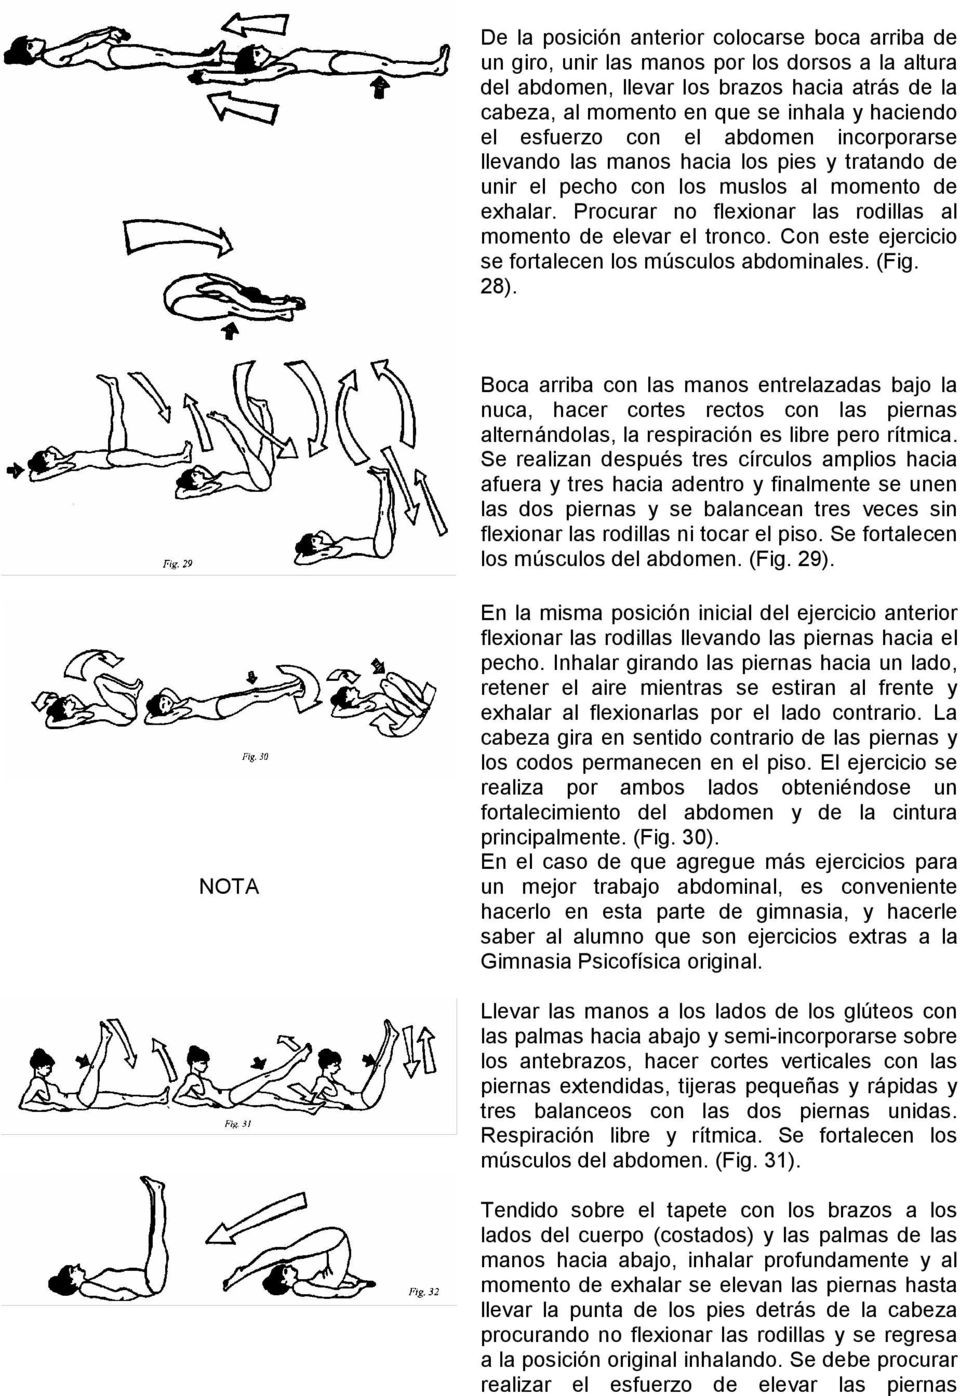 Procurar no flexionar las rodillas al momento de elevar el tronco. Con este ejercicio se fortalecen los músculos abdominales. (Fig. 28).